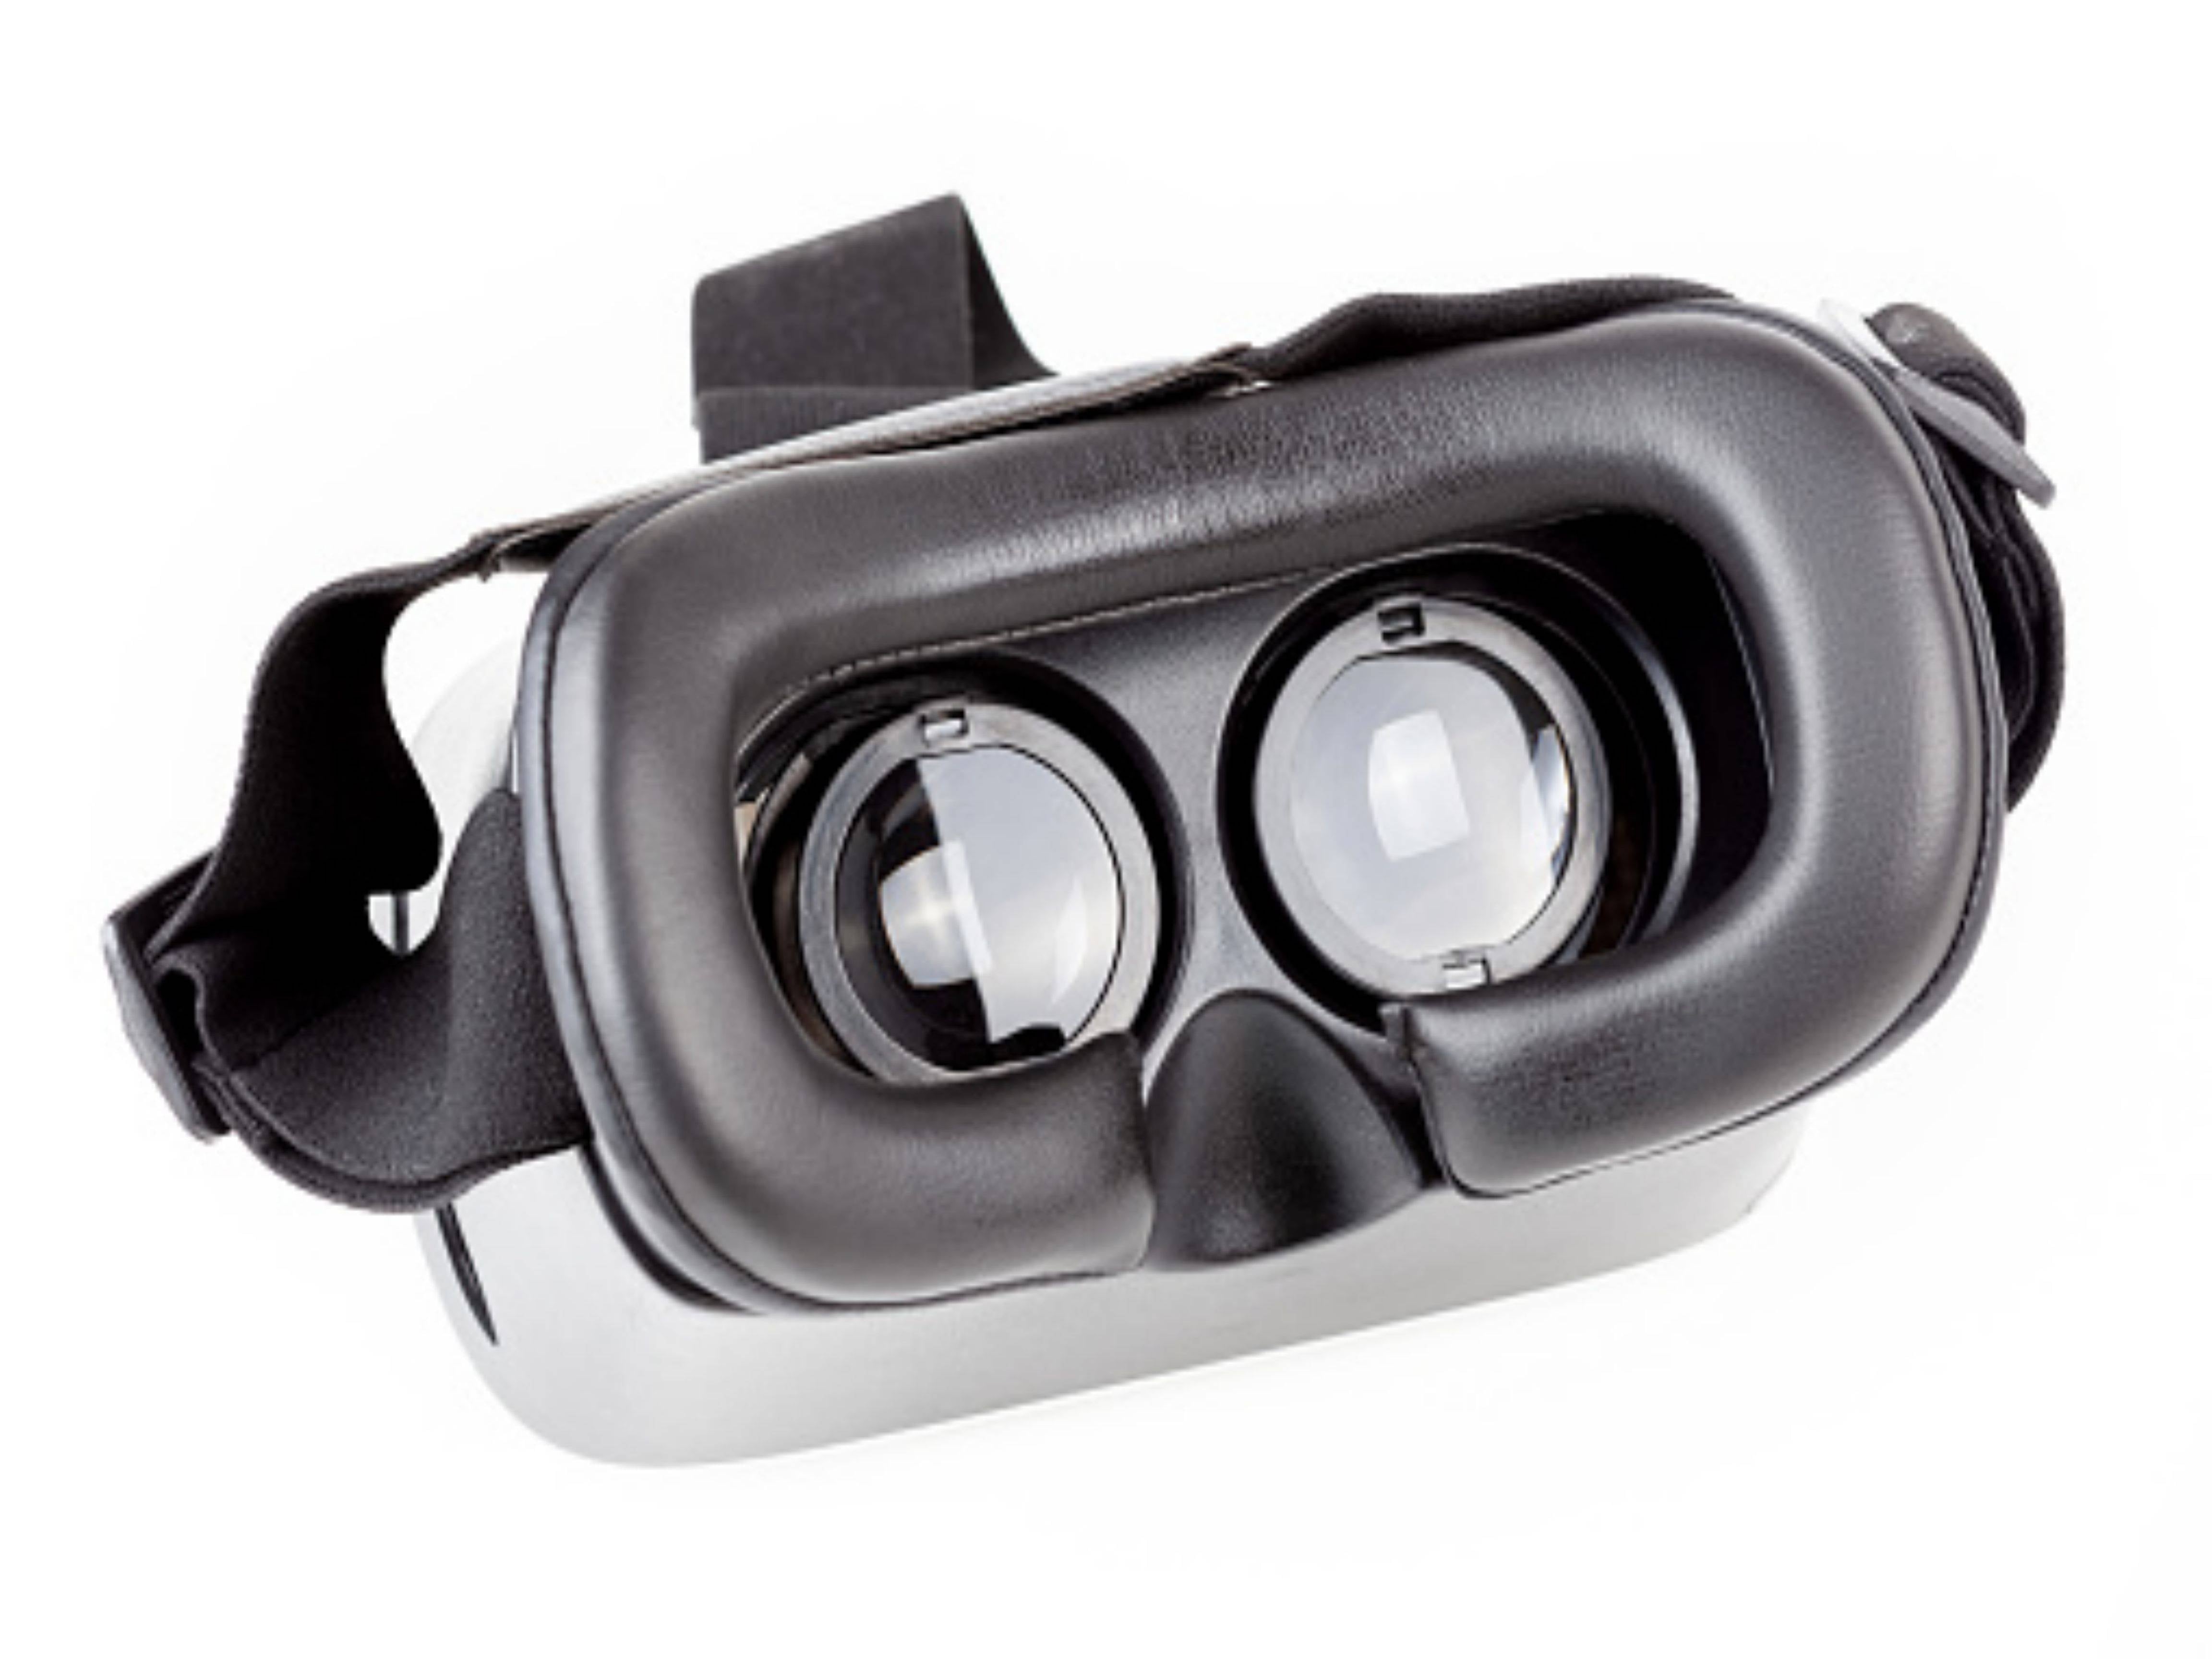 Proč se říká, že základní technologií VR headsetů jsou optické čočky?